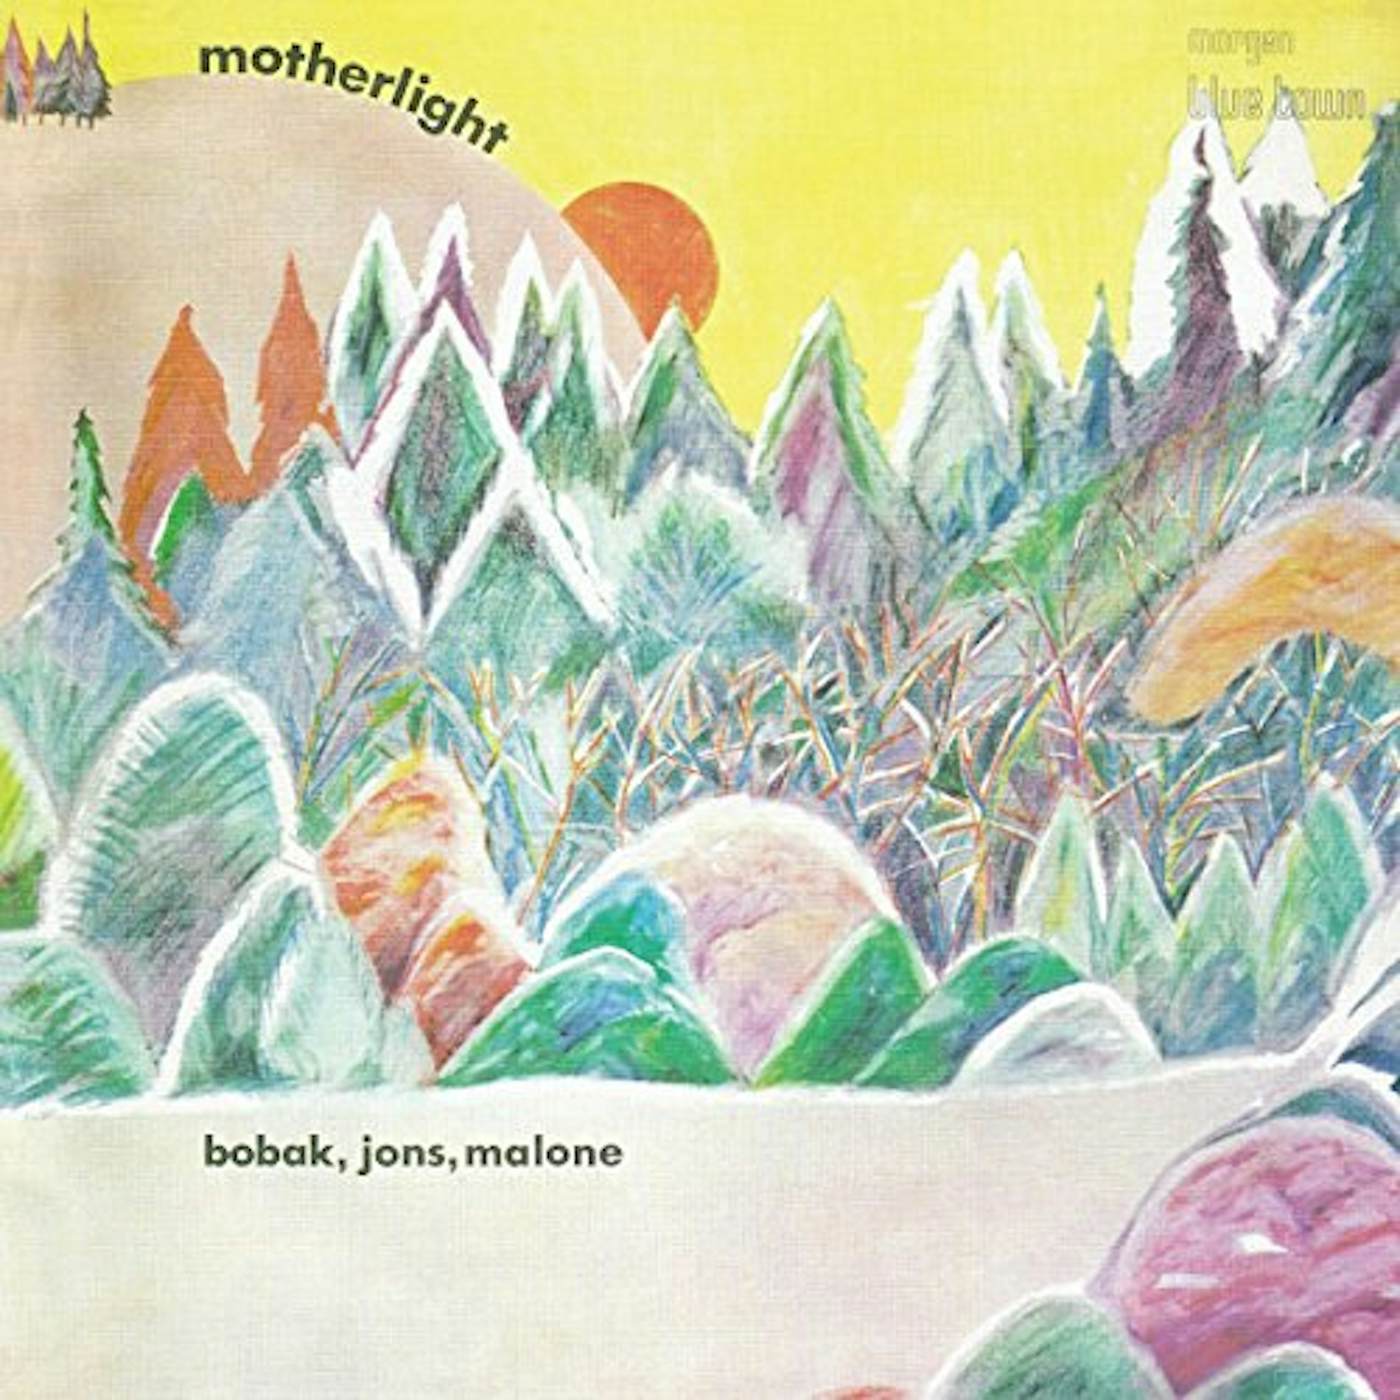 Bunny Berigan Motherlight Vinyl Record